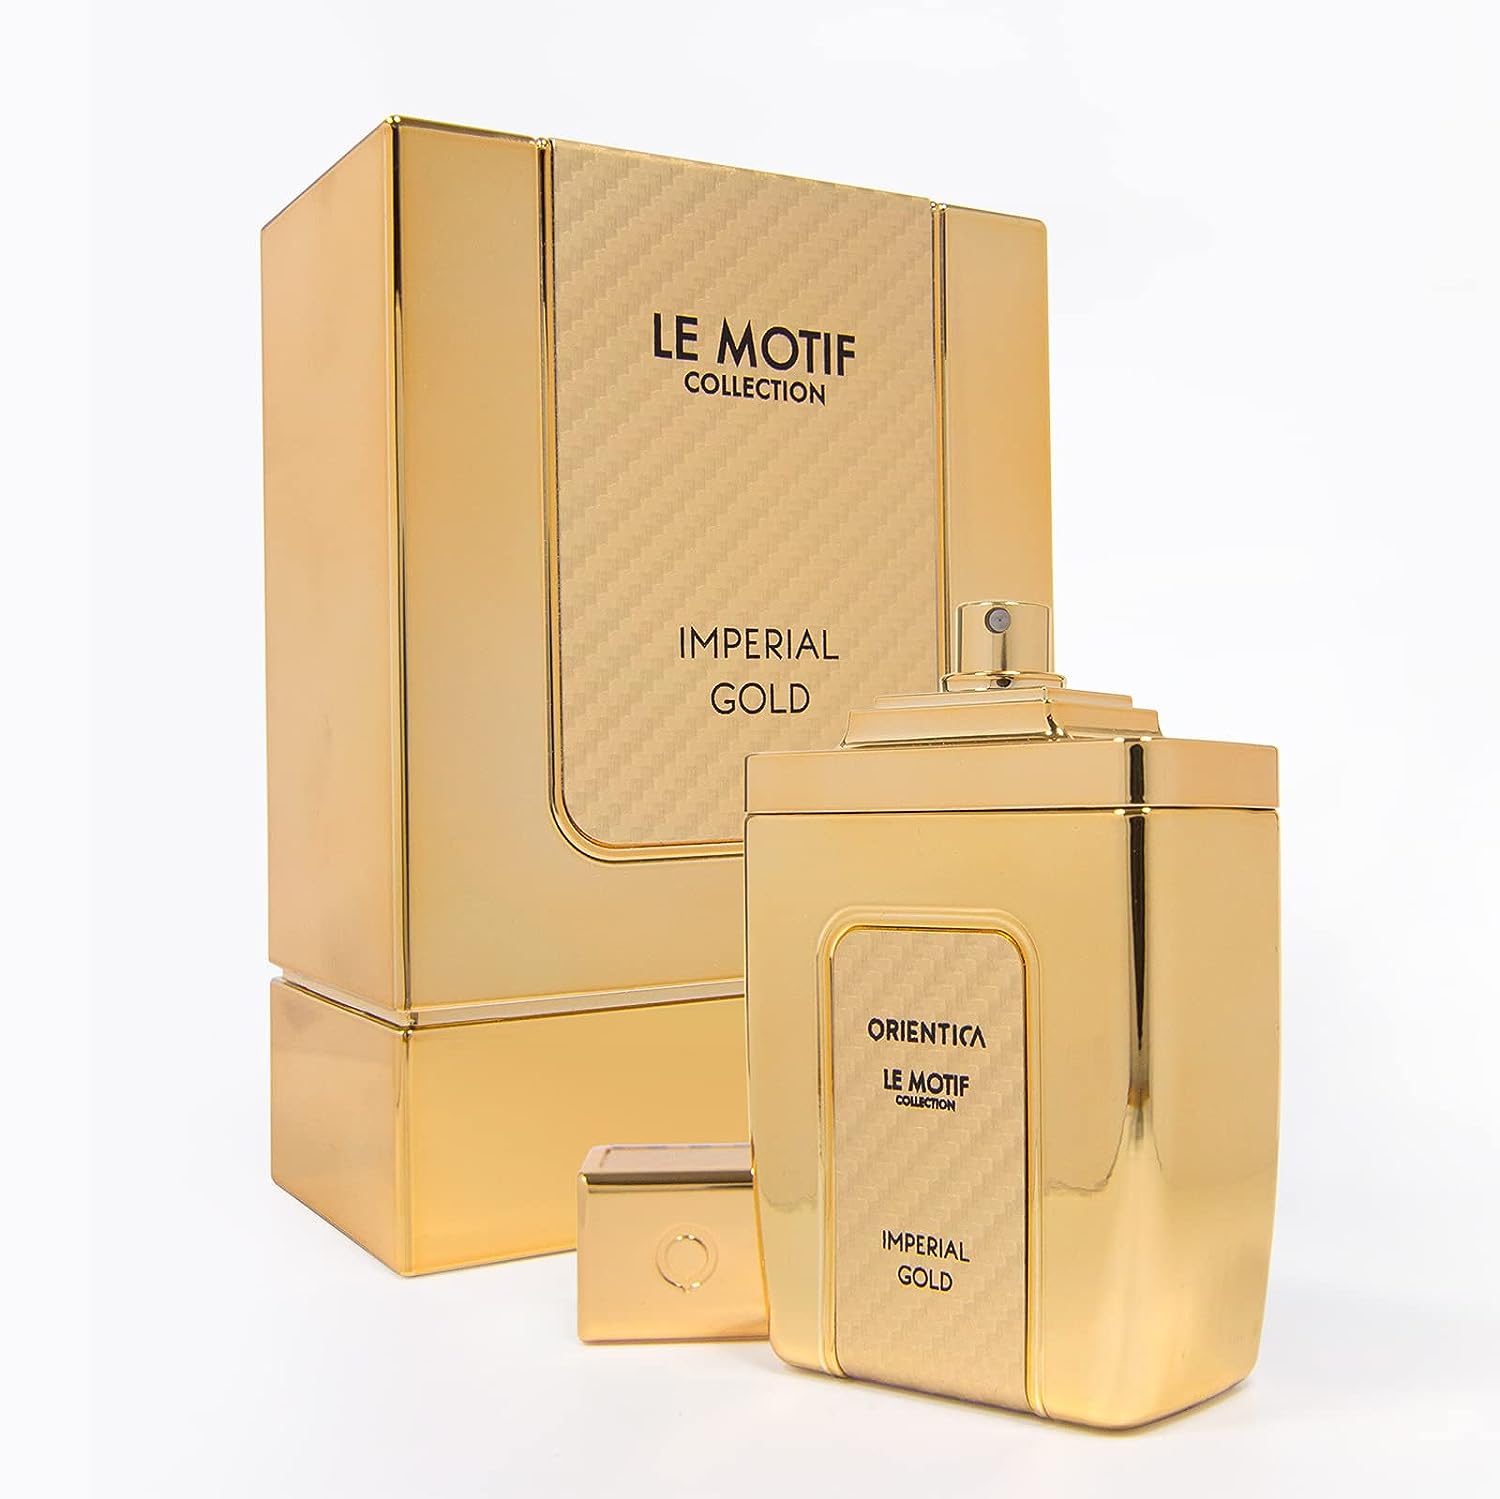 Orientica Le Motif Collection Imperial Gold For Men Eau de Parfum Spray, 2.9 Ounce